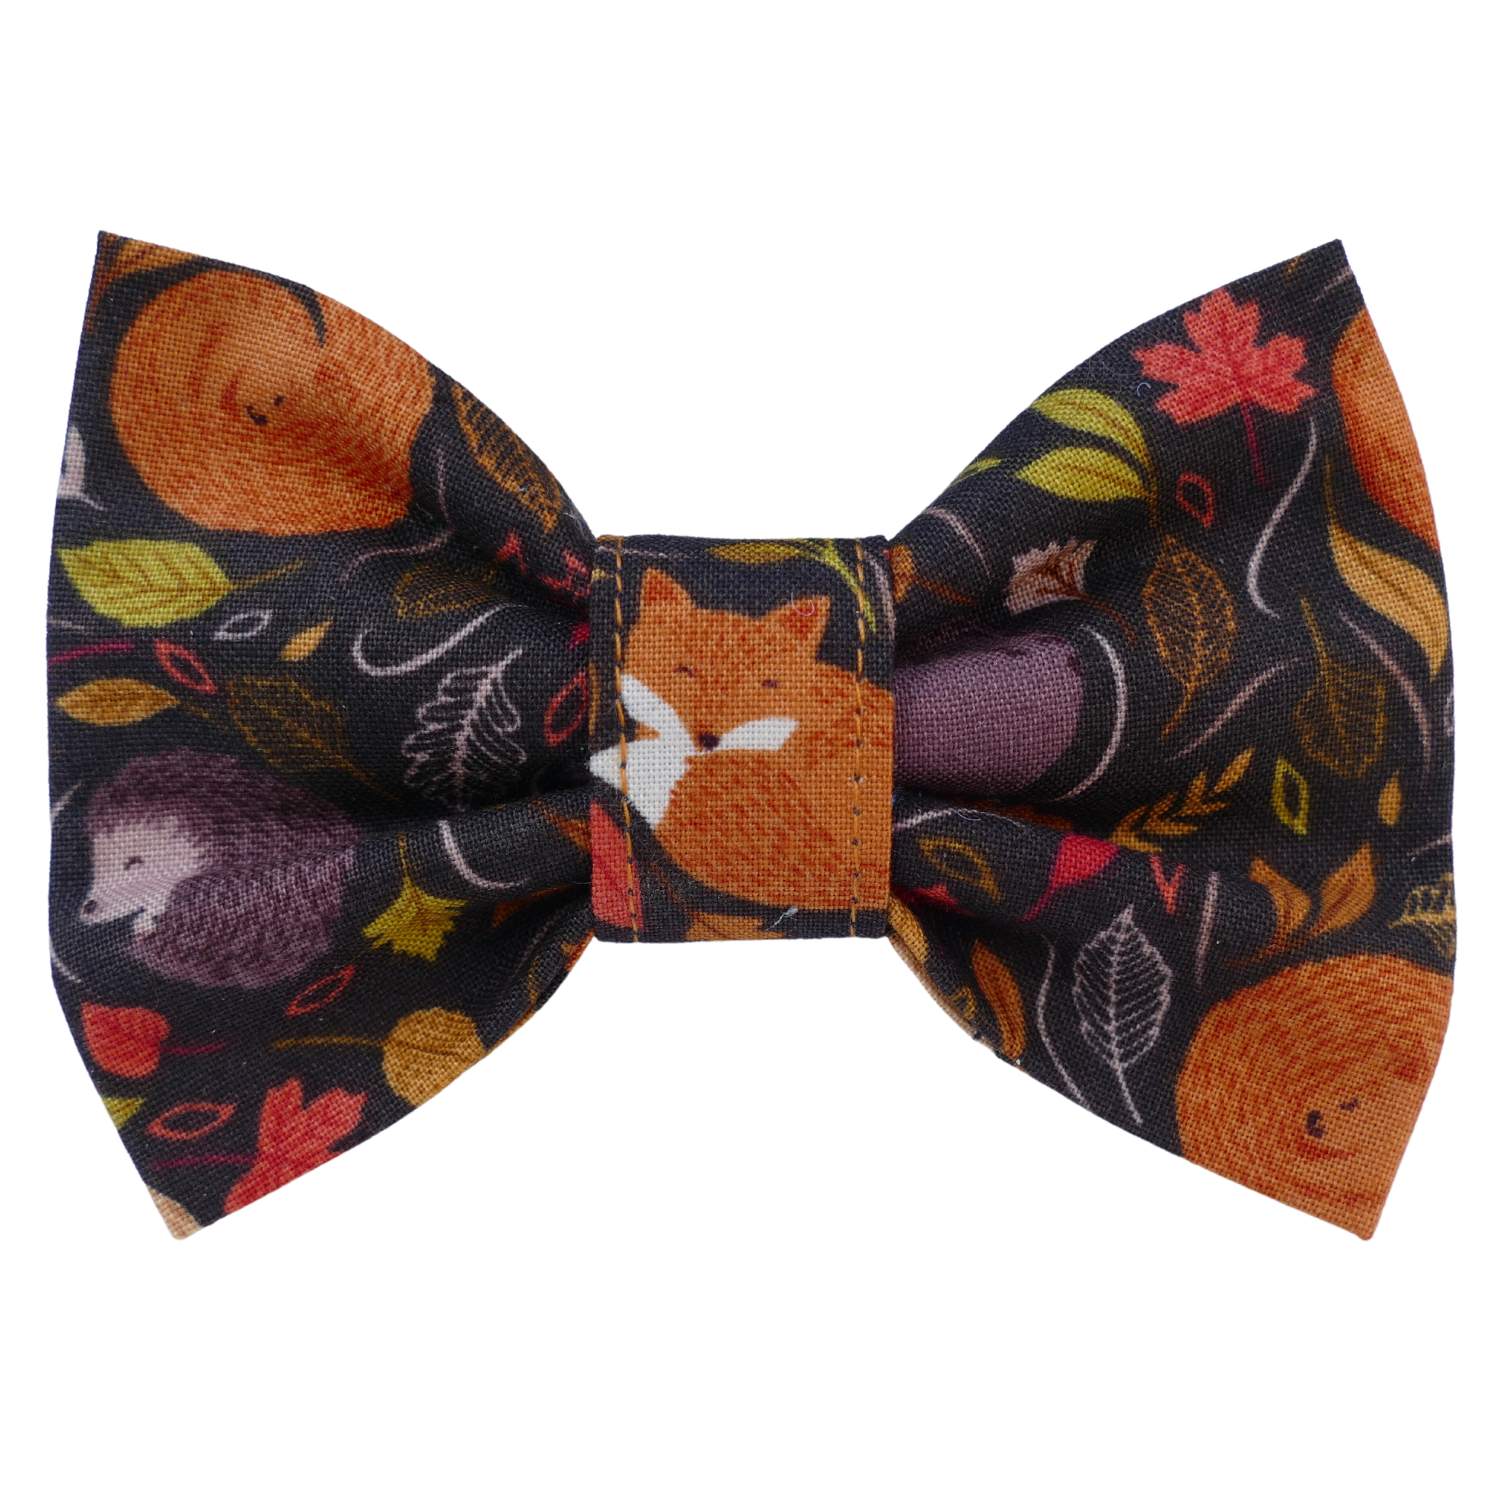 An Autumn Nap Dog Bow Tie